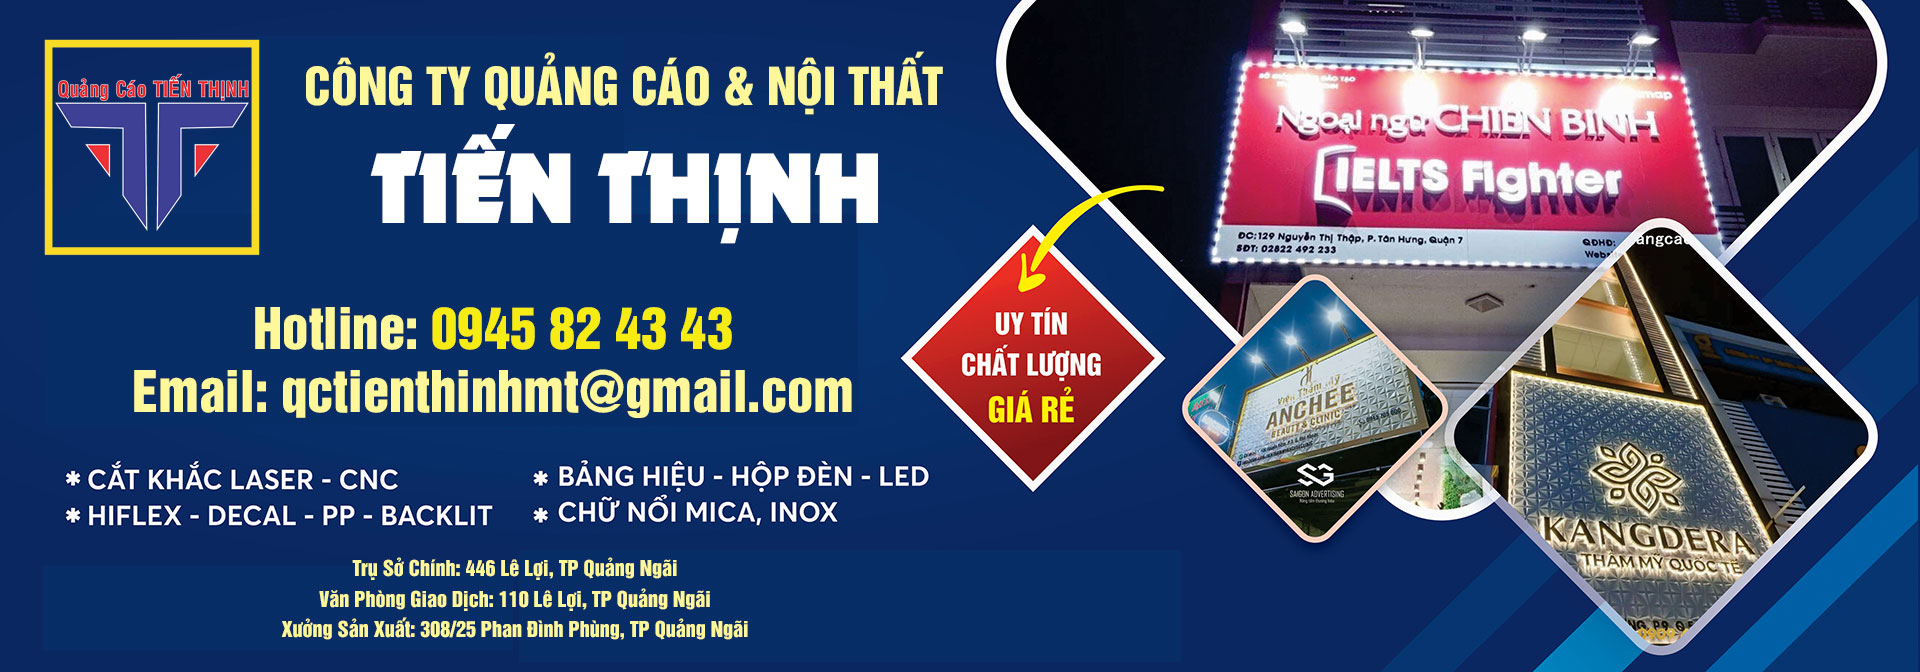 Tiến Thịnh - Công ty làm bảng hiệu quảng cáo nổi tiếng ở Quảng Ngãi